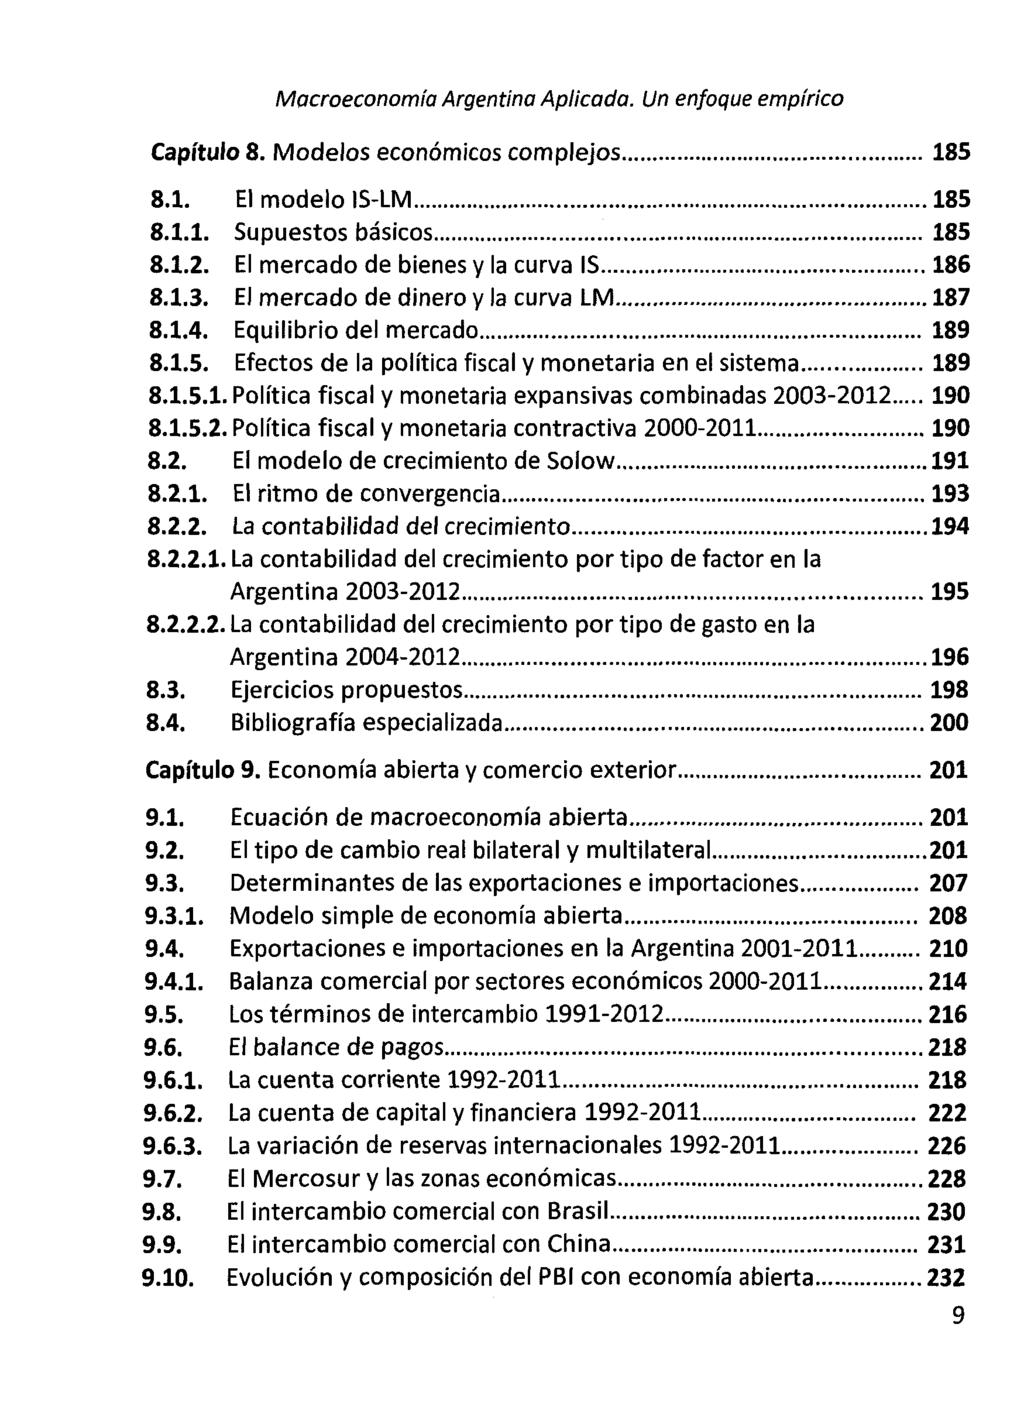 Macroeconomia Argentina Aplicada. Un enfoque empi'rico Capftulo 8. Modelos econömicos complejos 185 8.1. El modelo IS-LM 185 8.1.1. Supuestos bäsicos 185 8.1.2.